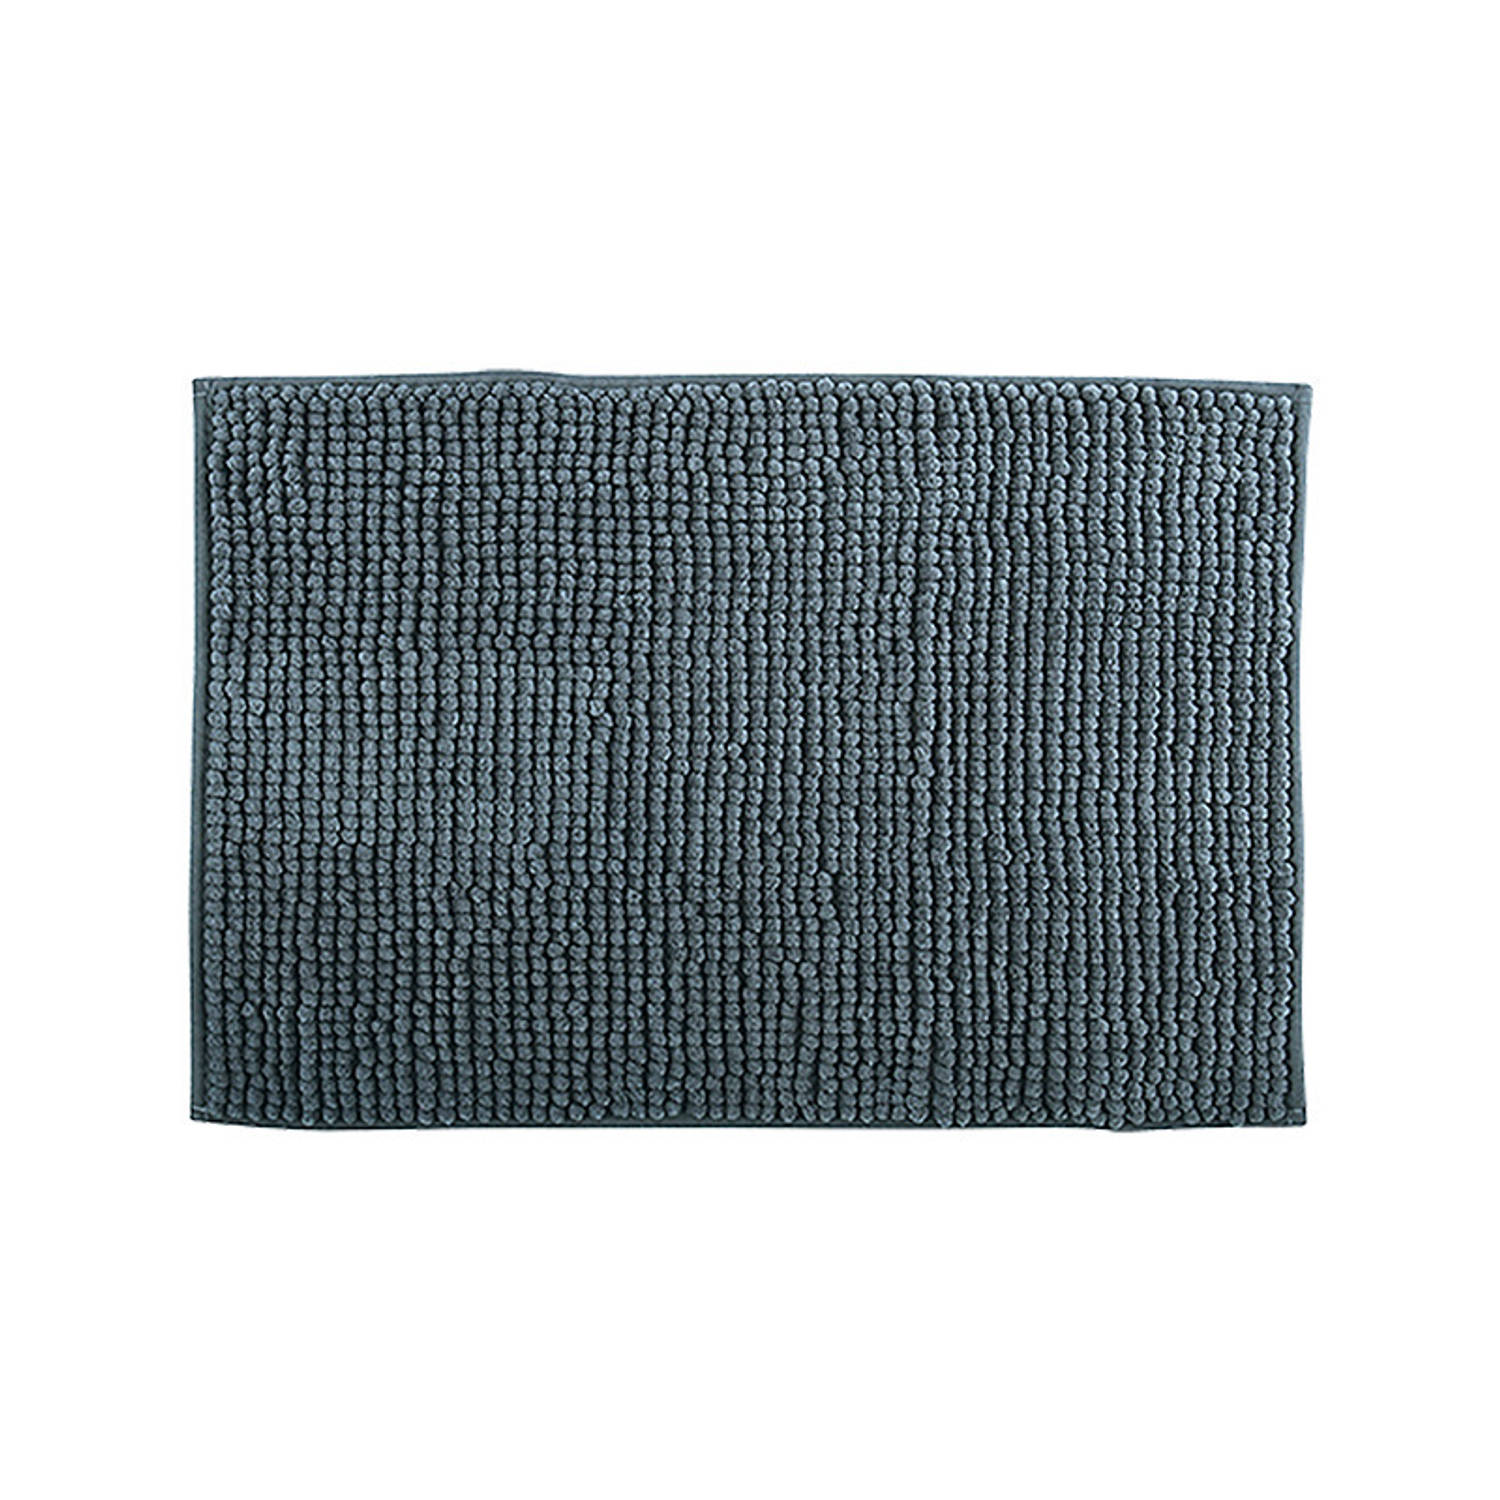 MSV Badkamerkleed/badmat tapijtje voor op de vloer - donkergrijs - 50 x 80 cm - Microvezel - anti slip